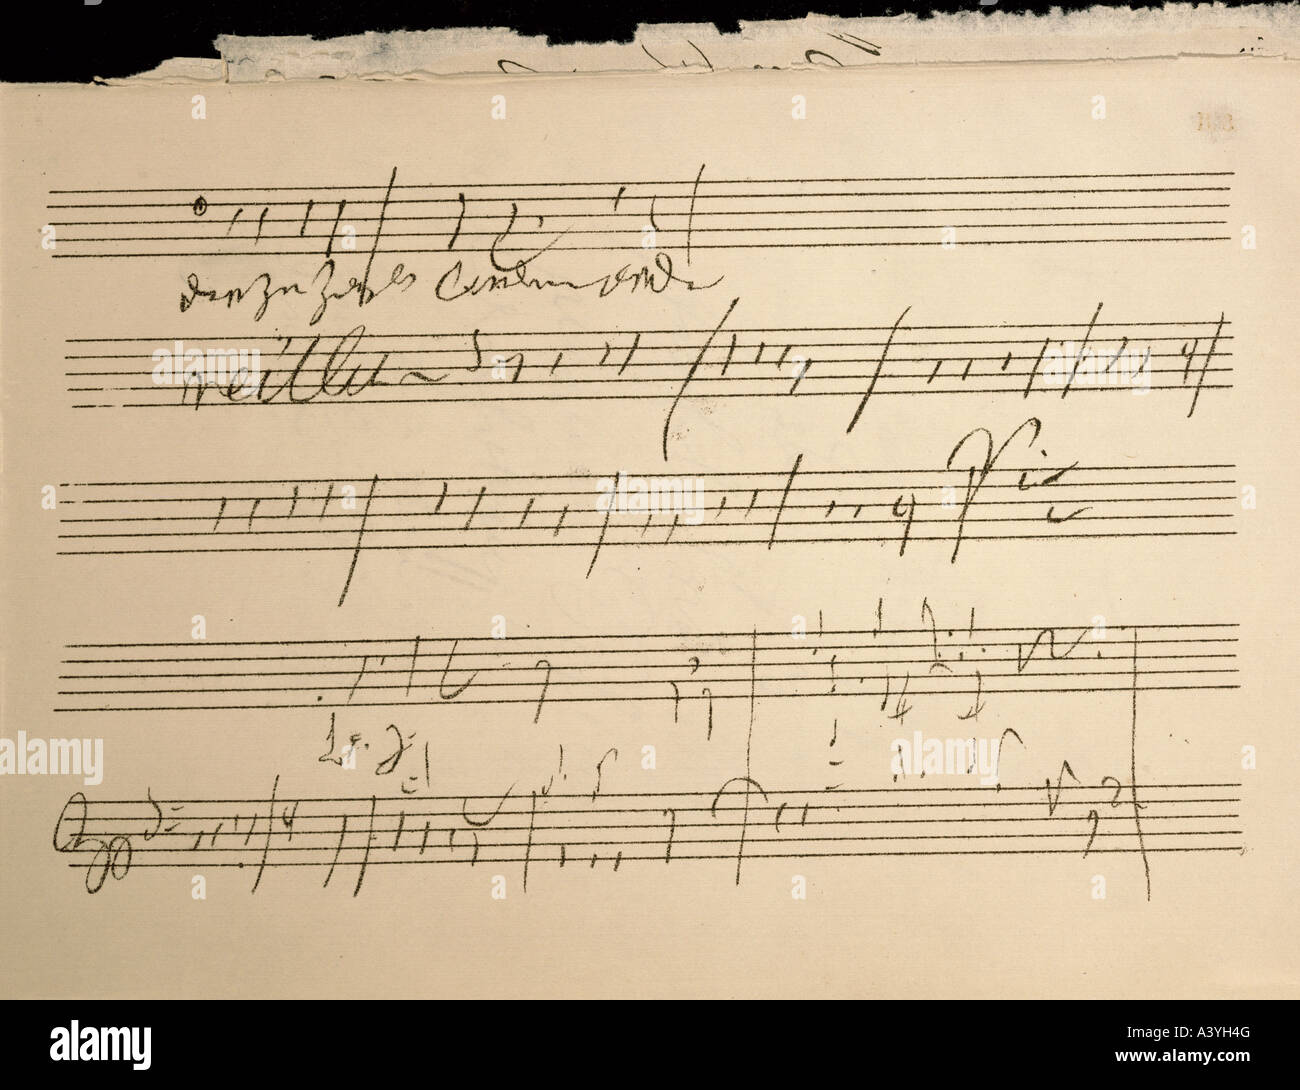 Beethoven, Ludwig van, 17.12.1770 - 26.3.1827, deutscher Komponist, Manuskript, Wünsche nach Veränderung, Partitur der Sinfonie Nr. 9, endgültige Moveme Stockfoto